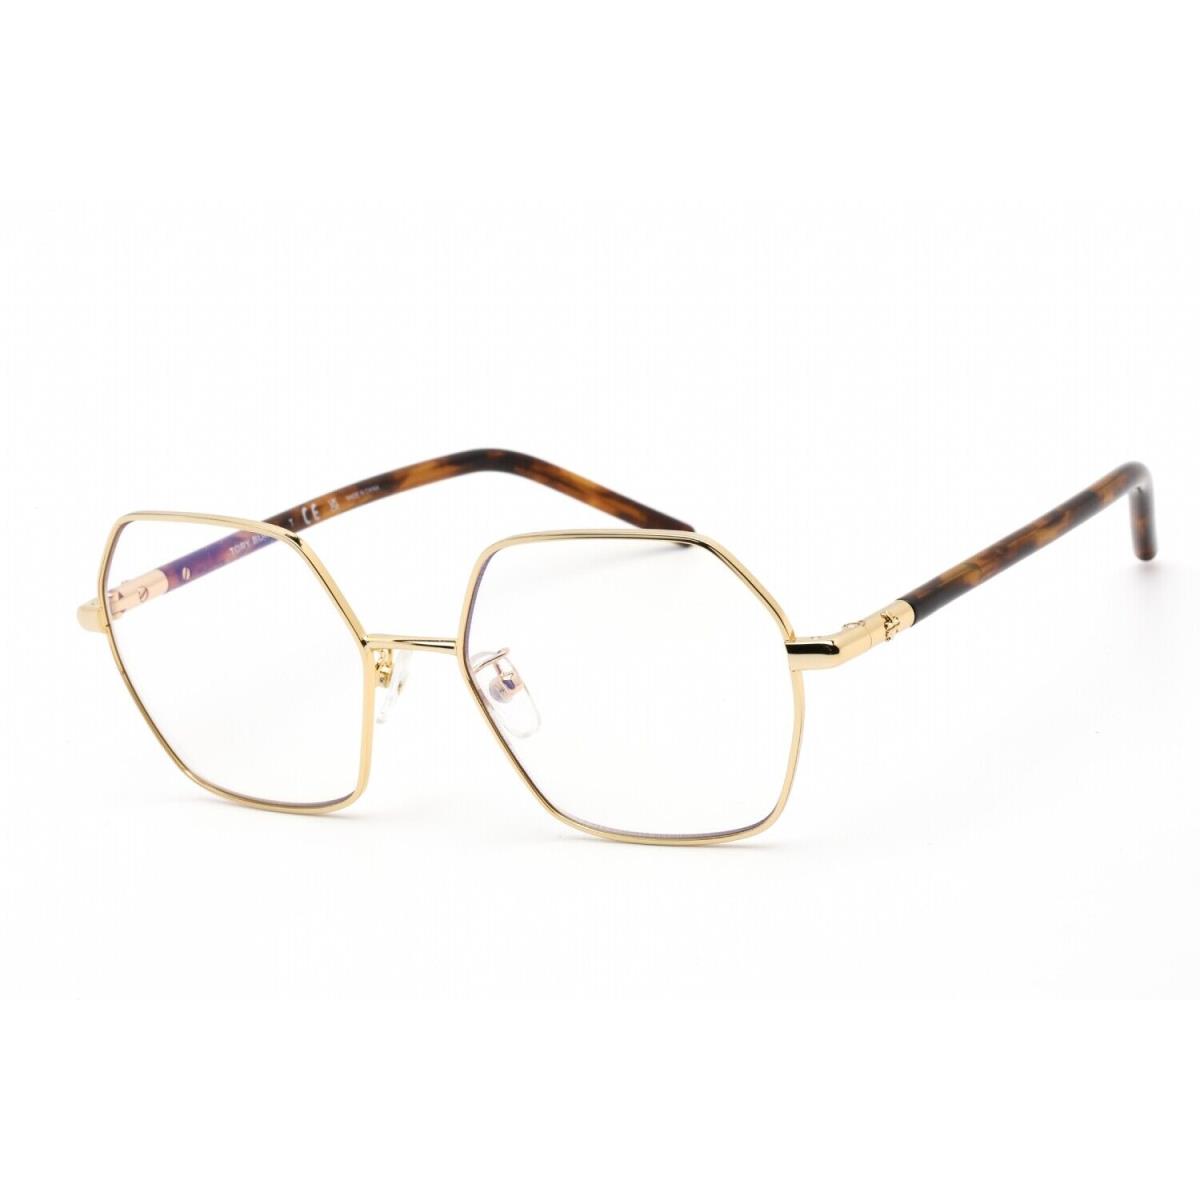 Tory Burch TY1072 3309SB Eyeglasses Shiny Gold Frame 52mm